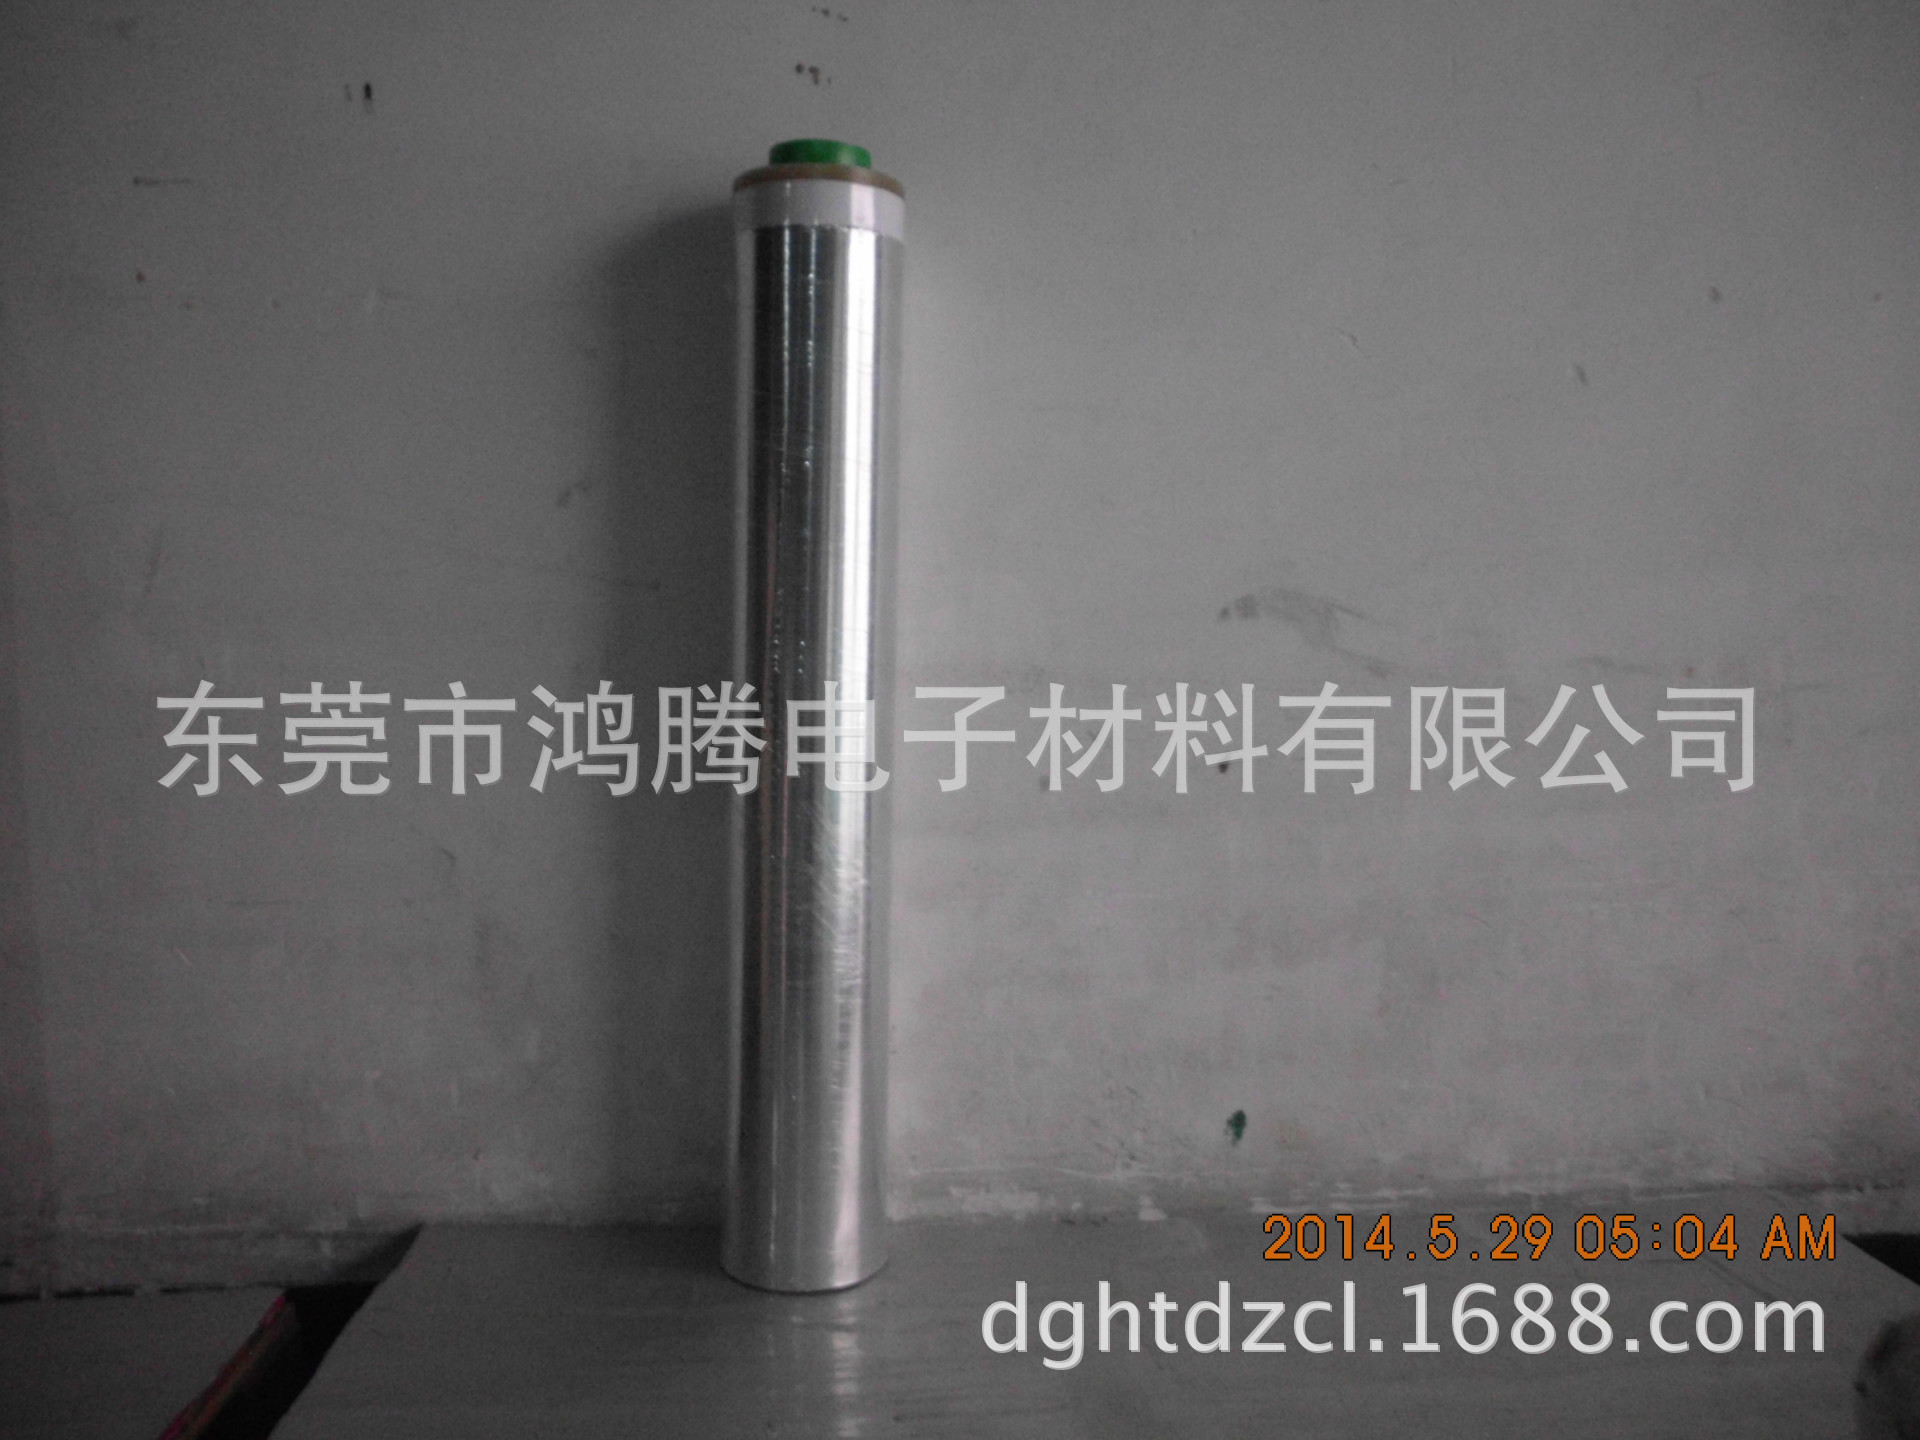 導電鋁箔膠帶HT-0230S